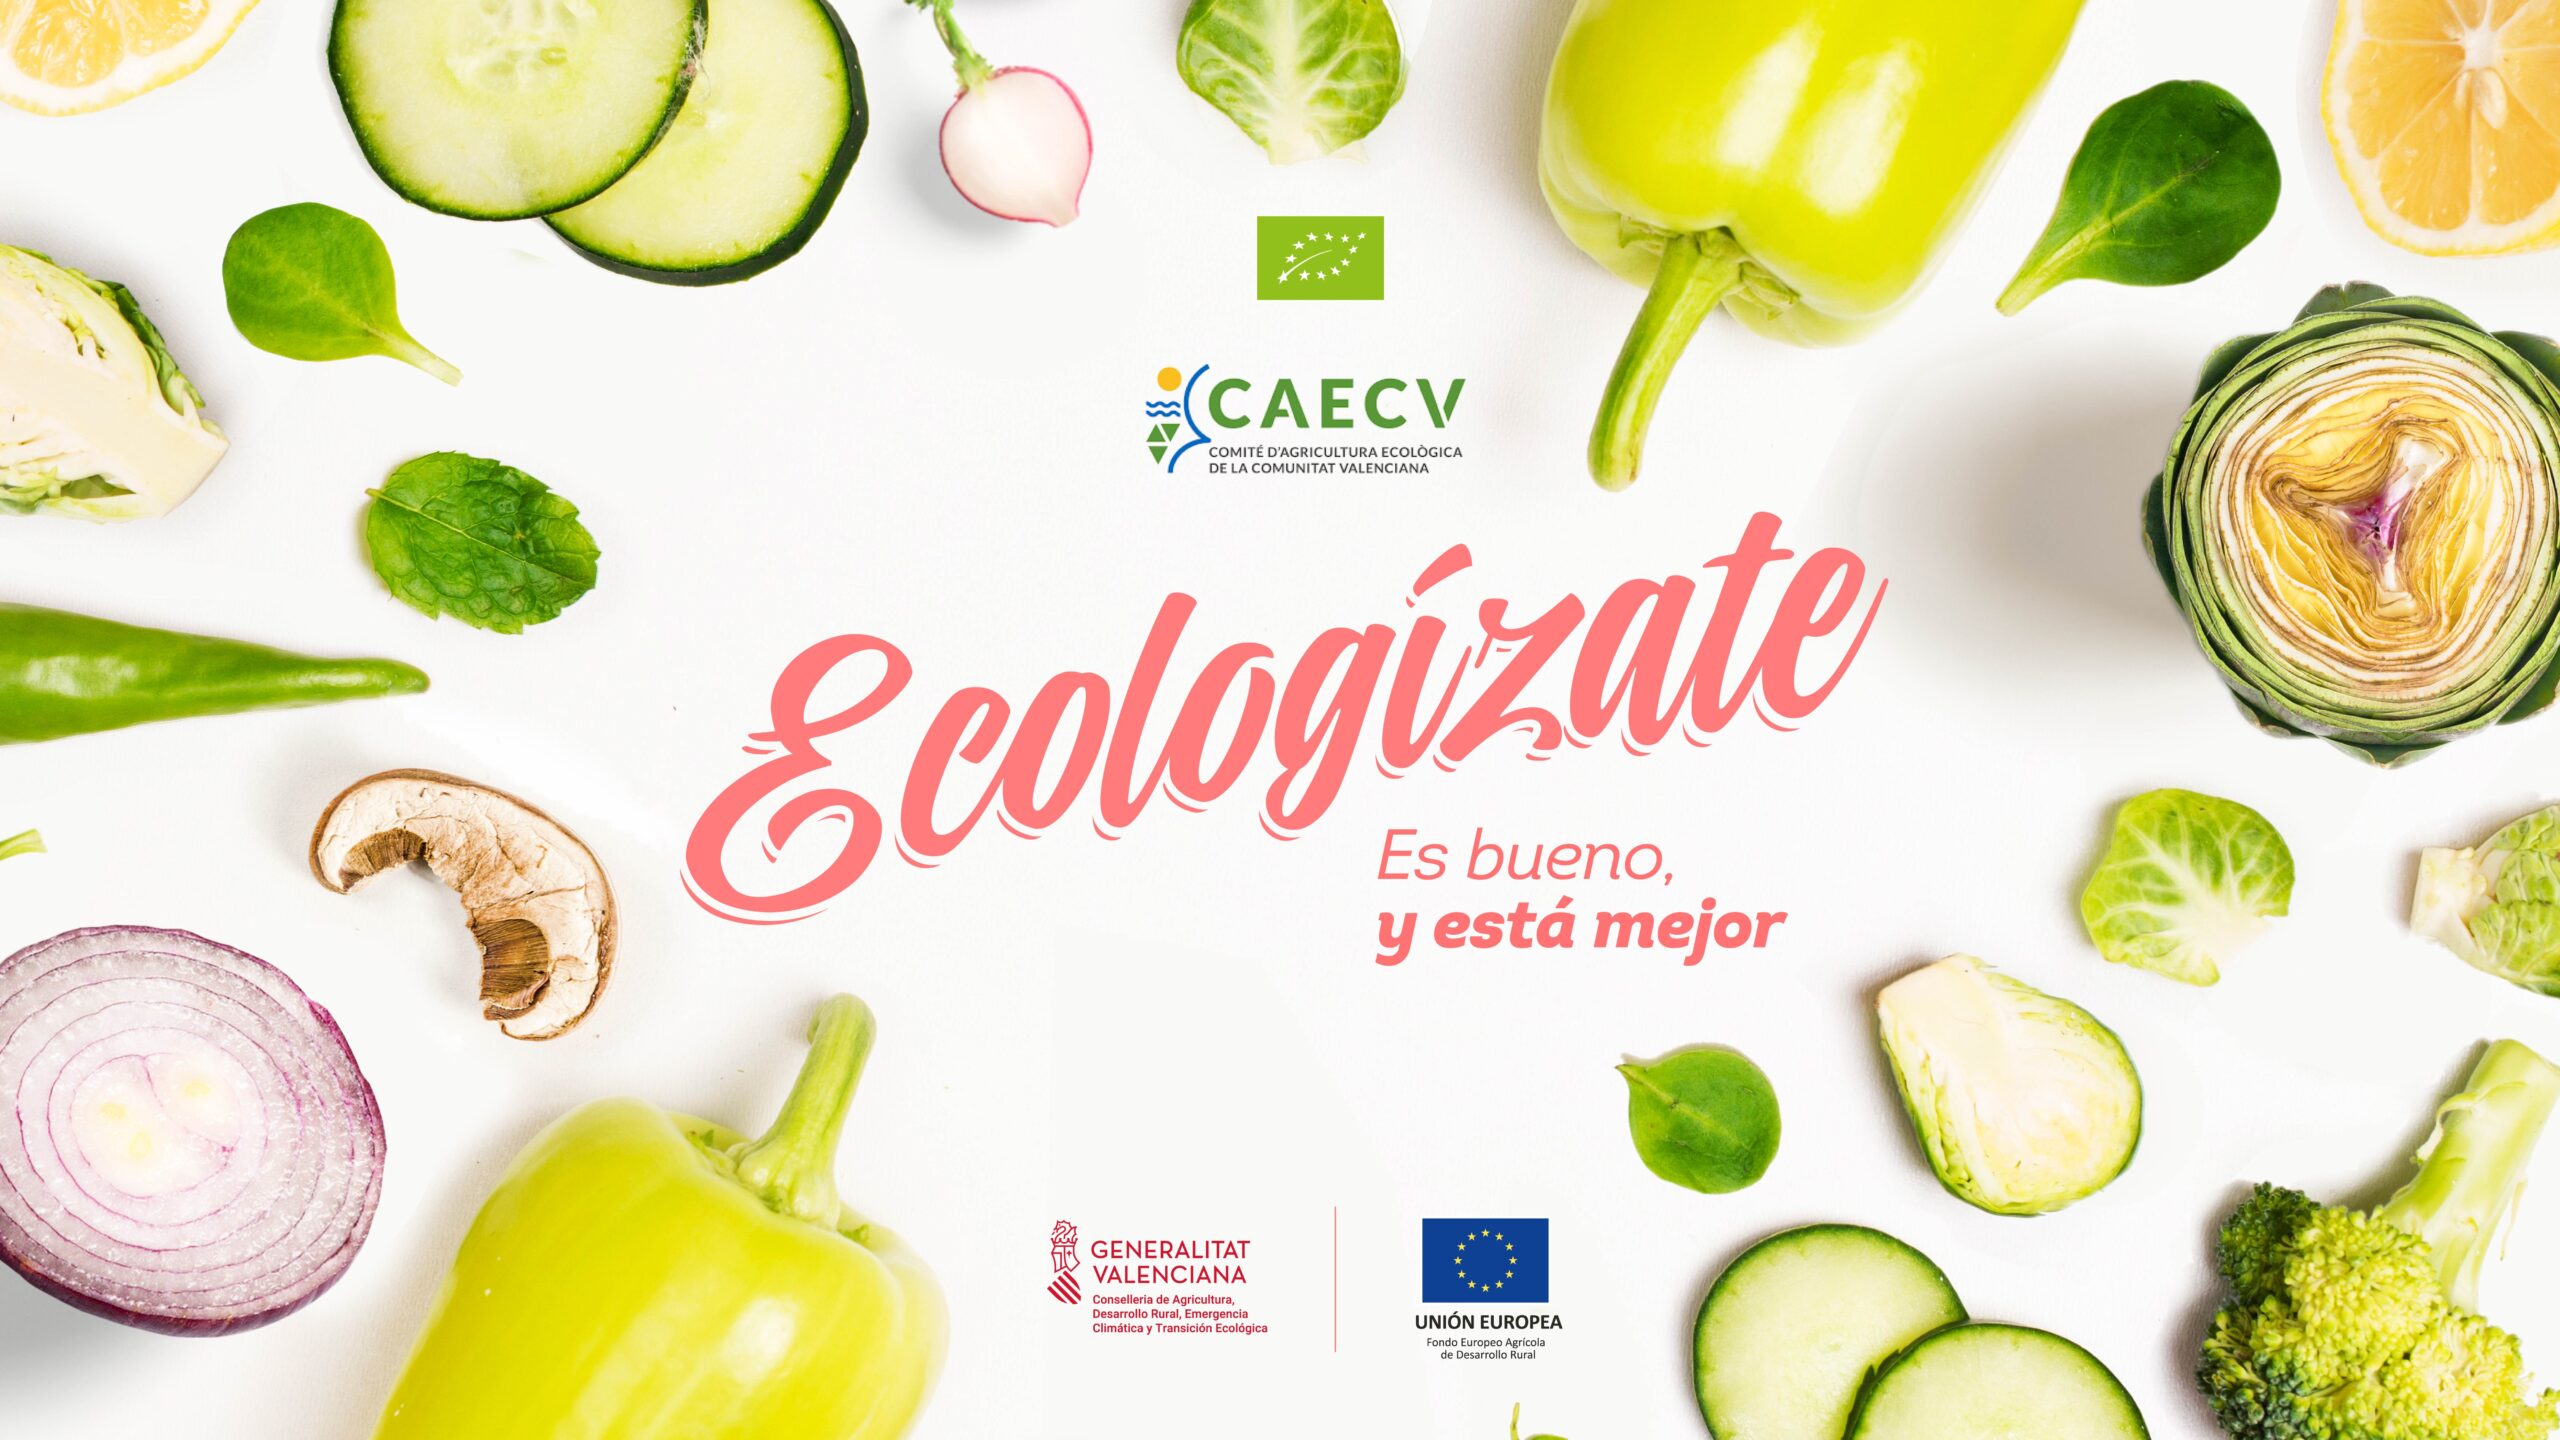 El CAECV pone en marcha una campaña de promoción online para apoyar al sector ecológico de la Comunitat